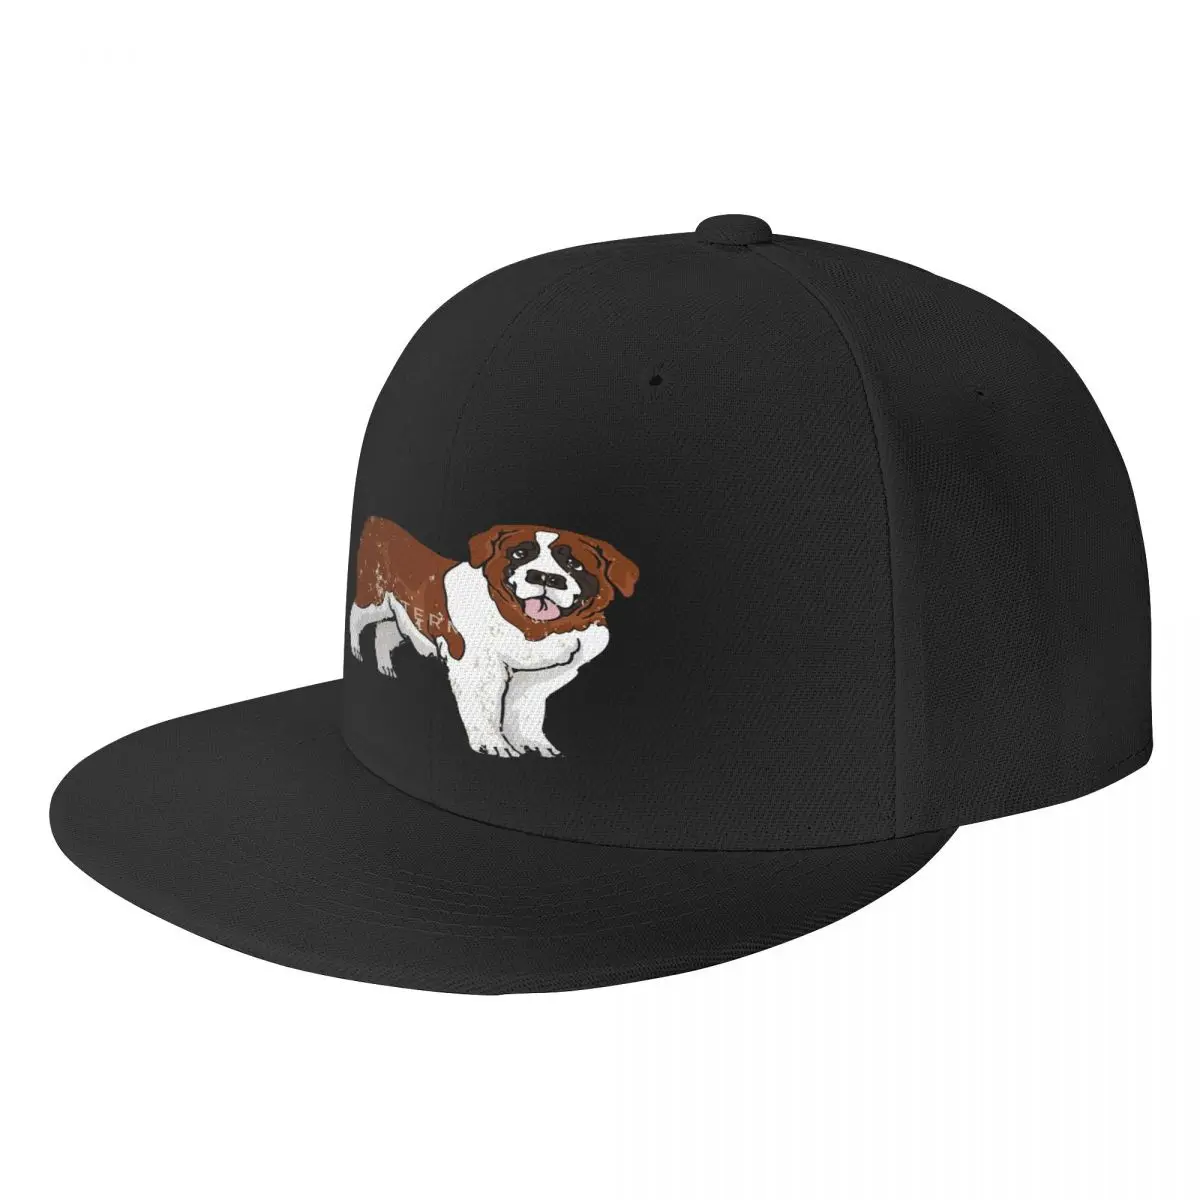 

Ретро винтажная шапка в стиле гранж с плоским покрытием для собак Сен-Бернара, бейсболка, модная практичная Регулируемая шапка, хороший подарок